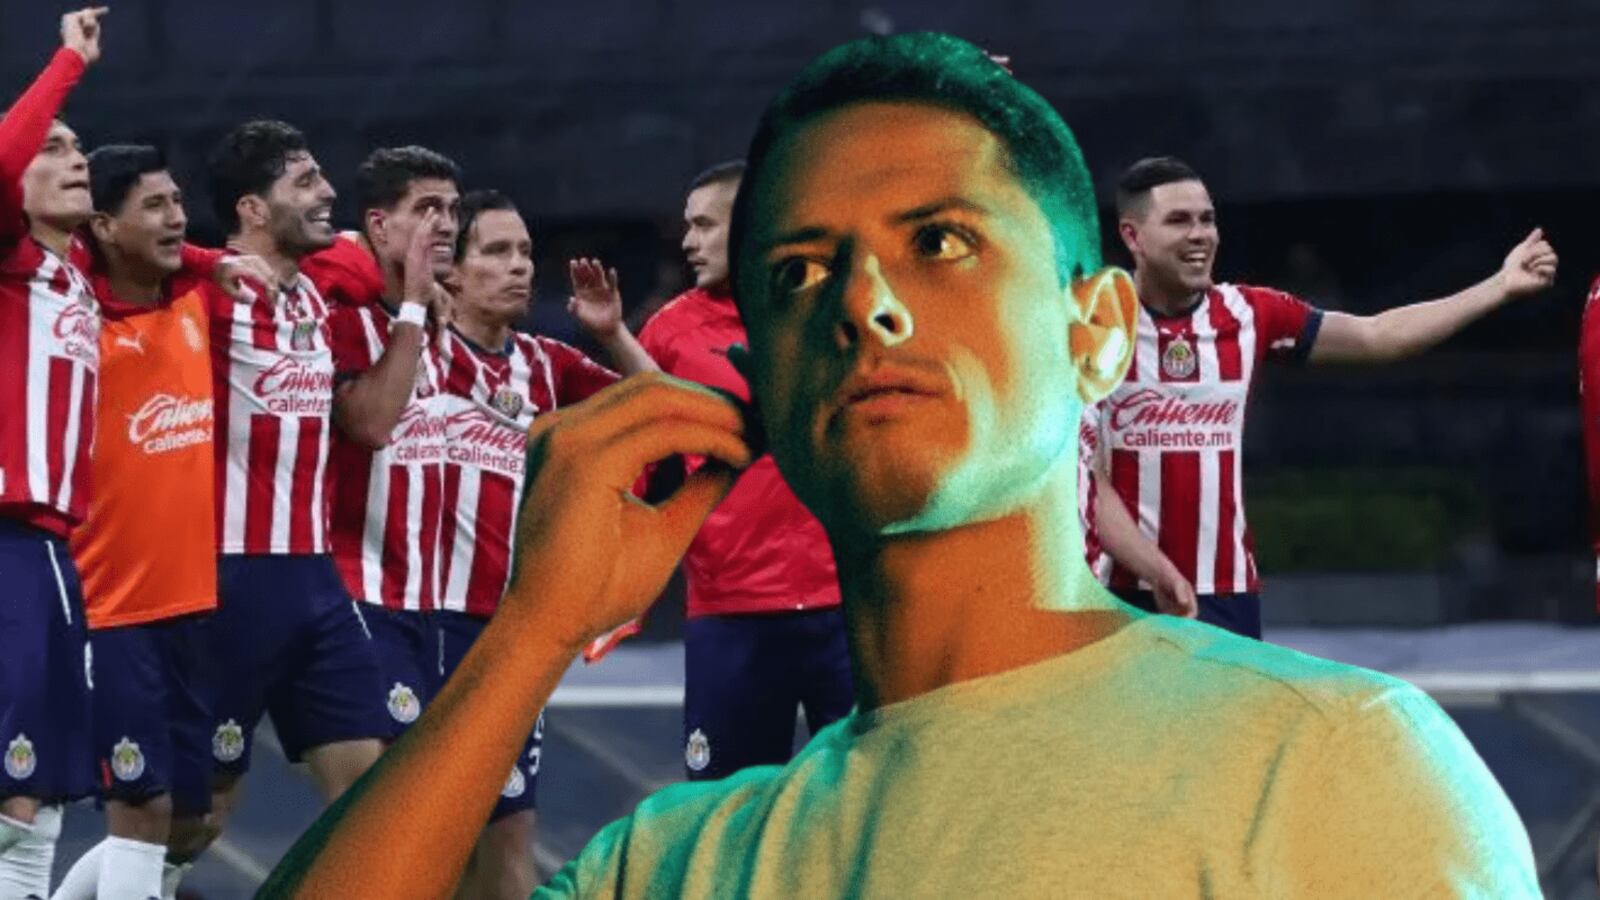 El jugador de Chivas que puso el grito en el cielo tras la llegada de Chicharito